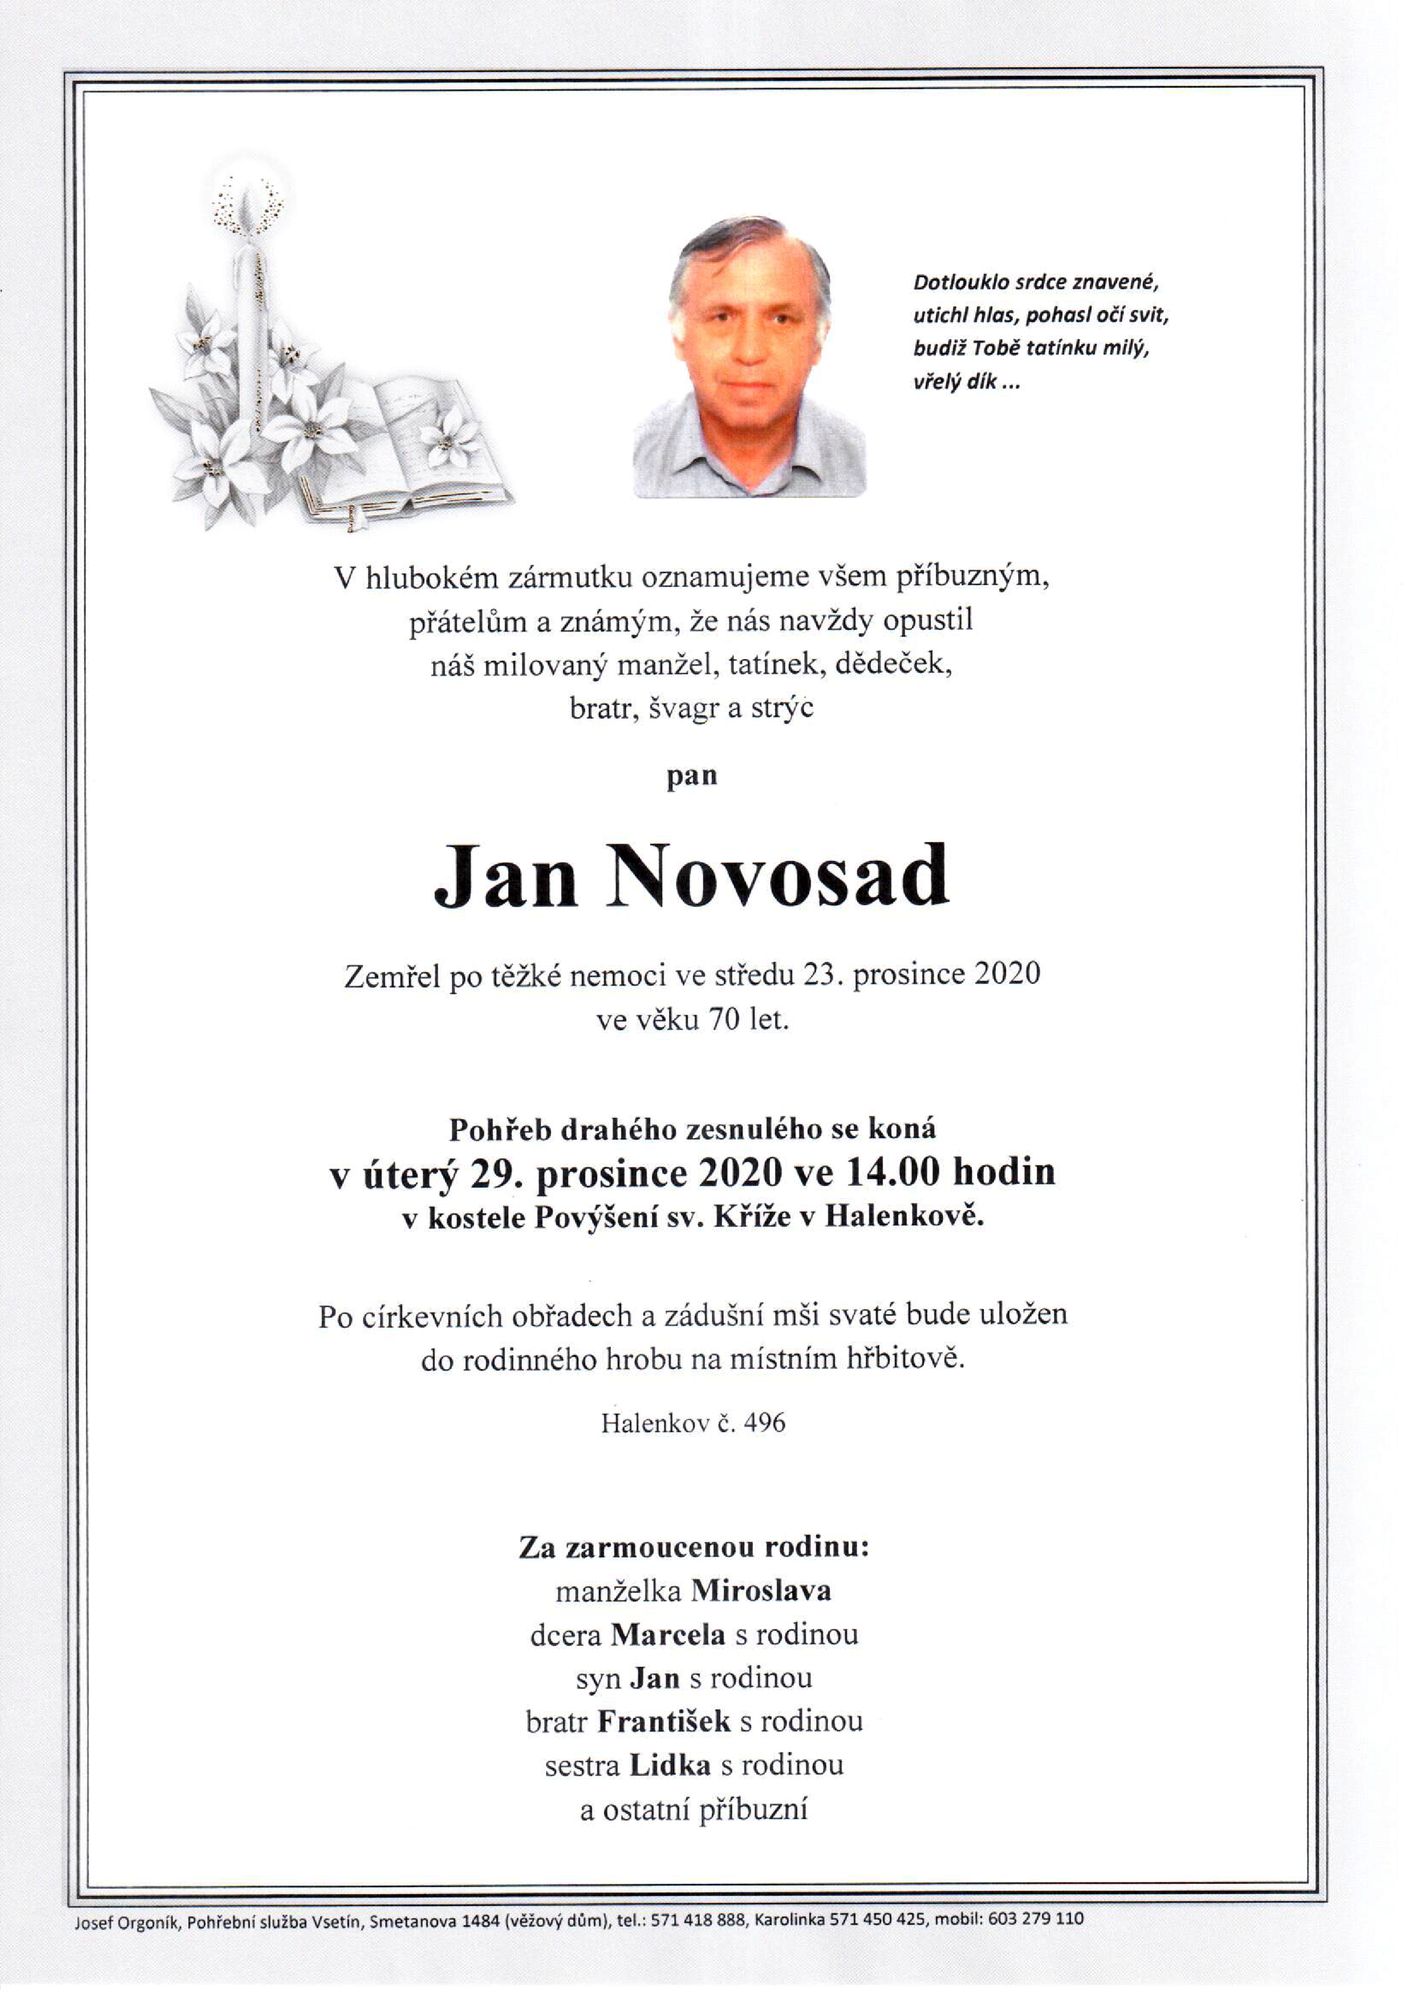 Jan Novosad